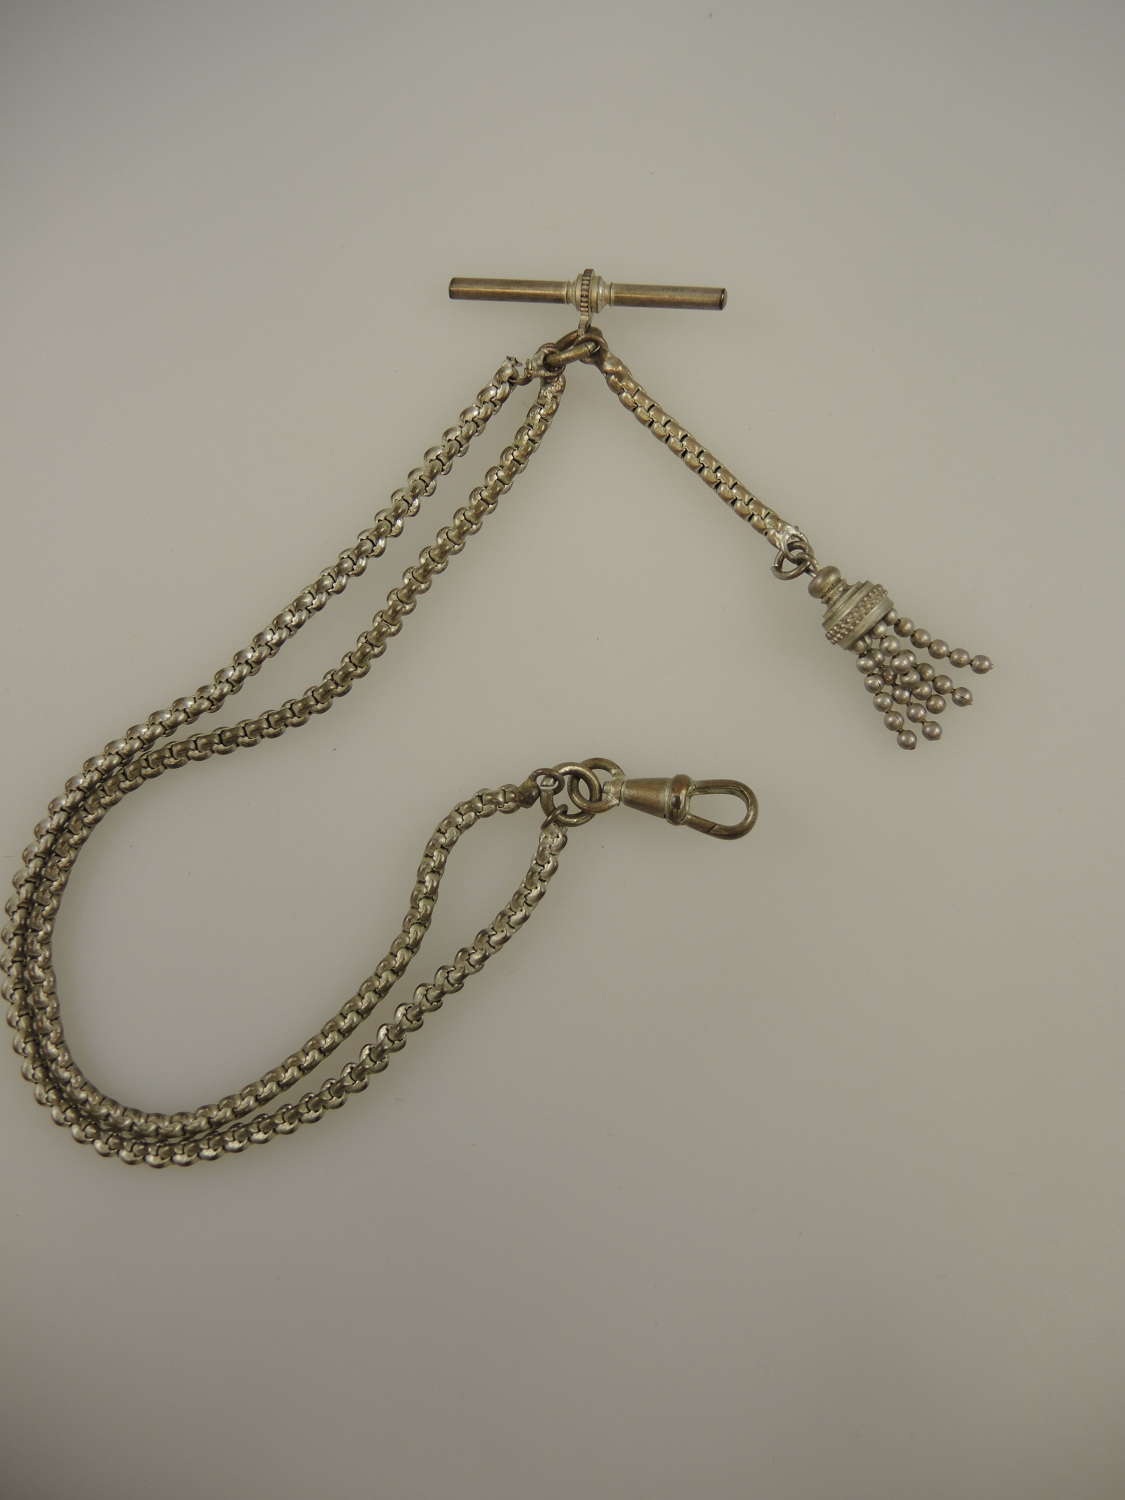 Victorian pocket watch chain with tassel c1890